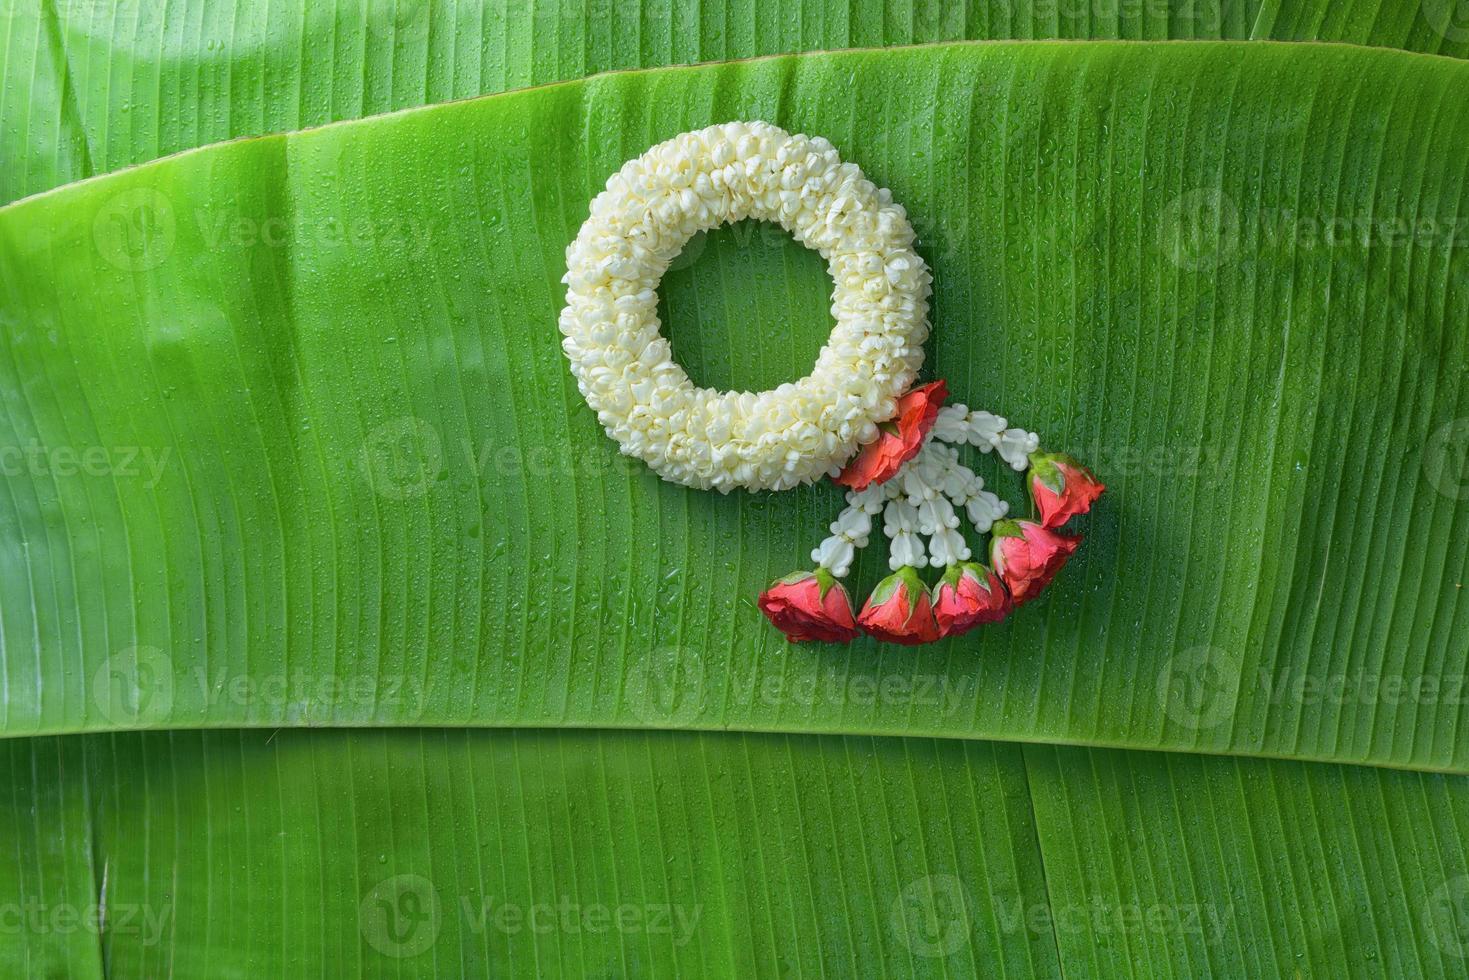 guirlande de jasmin traditionnel thaïlandais.symbole de la fête des mères en thaïlande sur une feuille de bananier photo